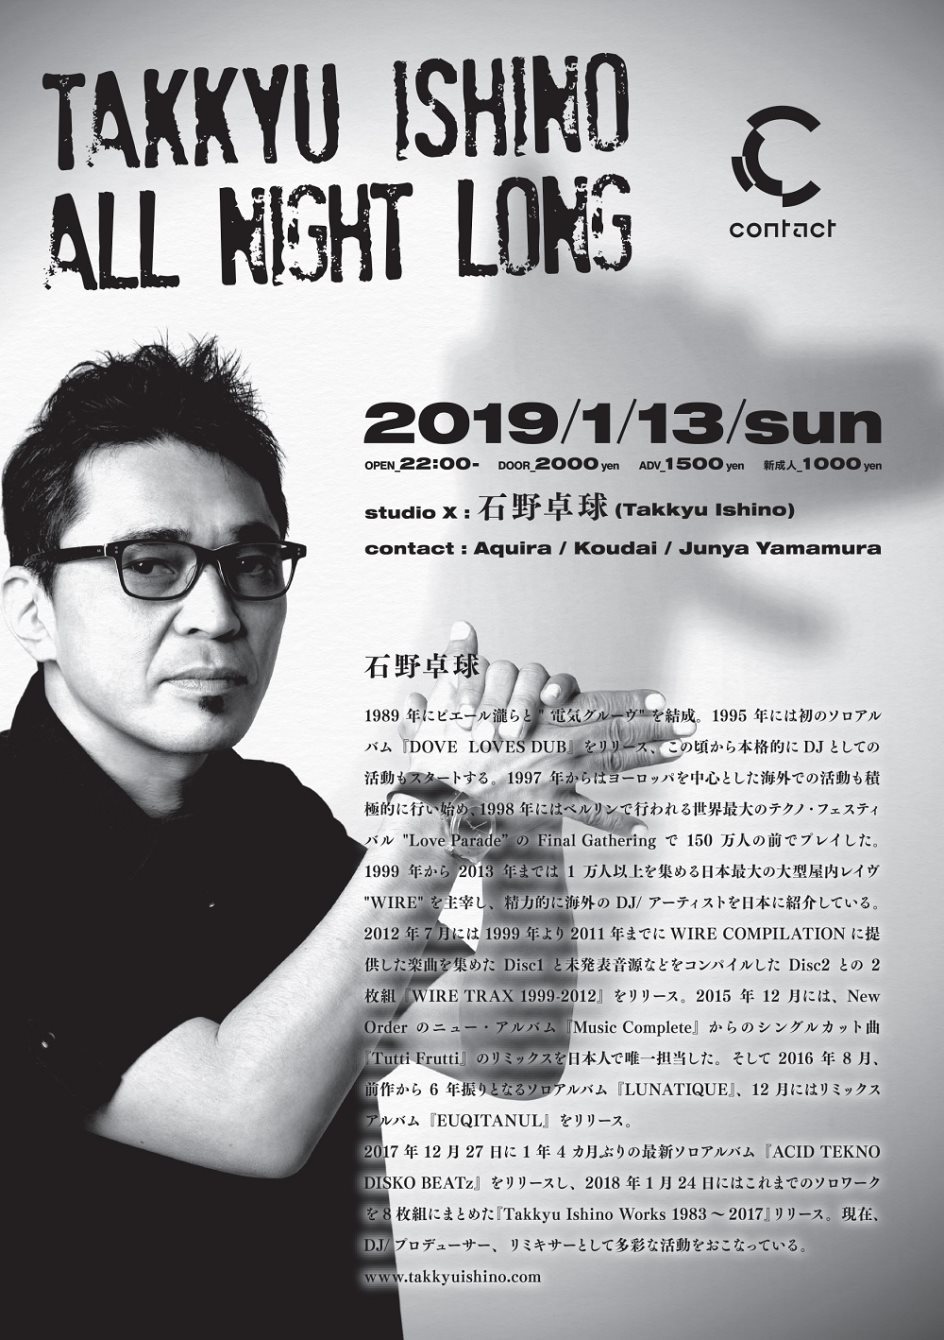 Takkyu Ishino - All Night Long - at Contact, Tokyo